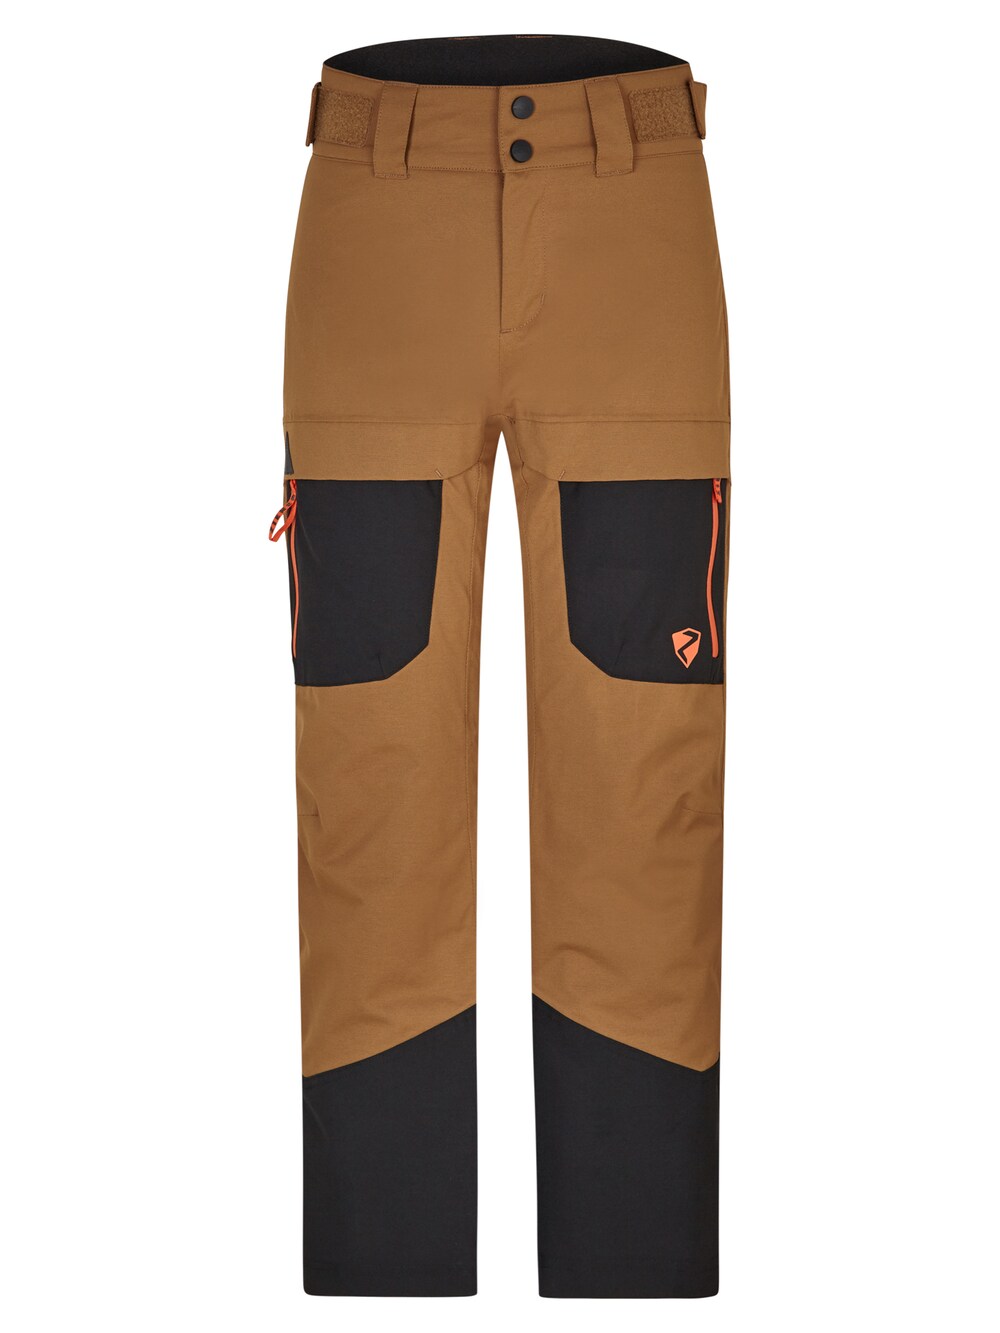 Обычные тренировочные брюки Ziener AYSAL, коричневый